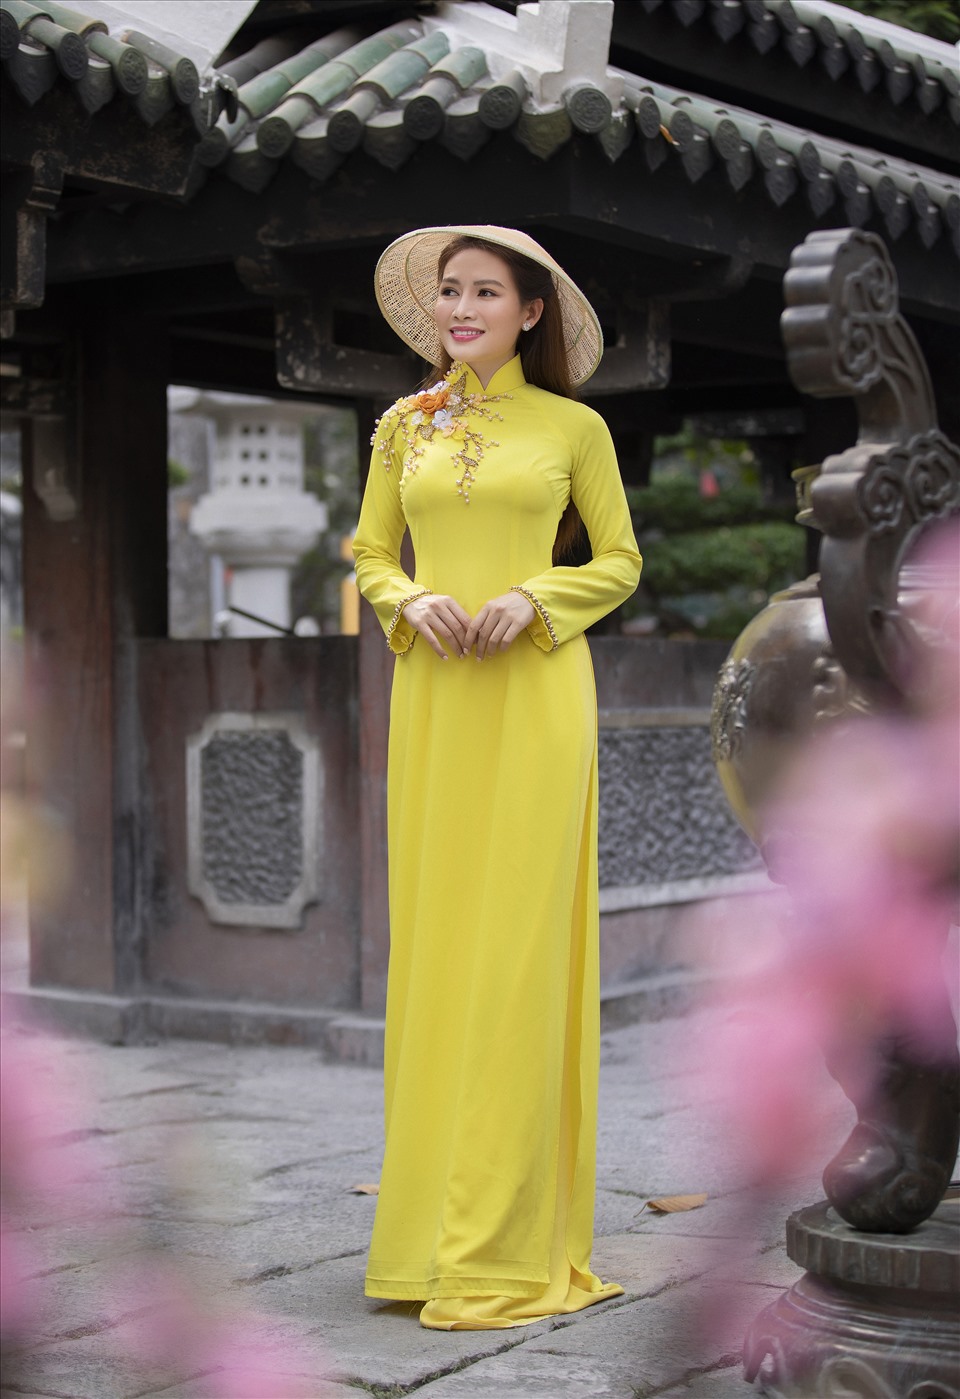 Năm 2020, Văn Phương gặp hái thành công trong diễn xuất khi đoạt giải “Nữ diễn viên được yêu thích nhất” giải Mai Vàng với phim “Mẹ ghẻ” (đạo diễn Trương Dũng).